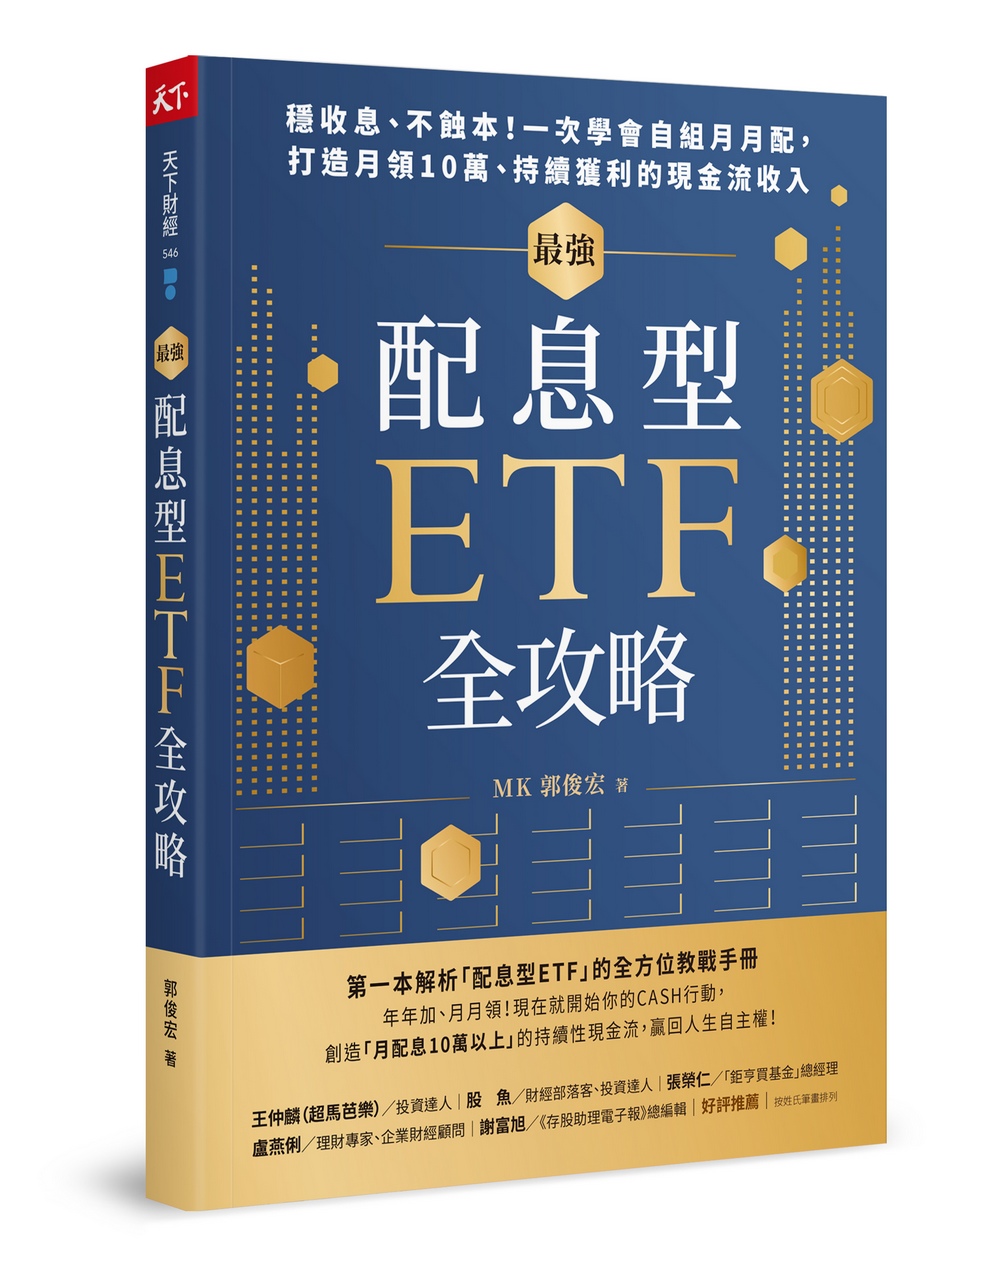 最強配息型ETF全攻略: 穩收息、不蝕本! 一次學會自組月月配, 打造月領10萬、持續獲利的現金流收入